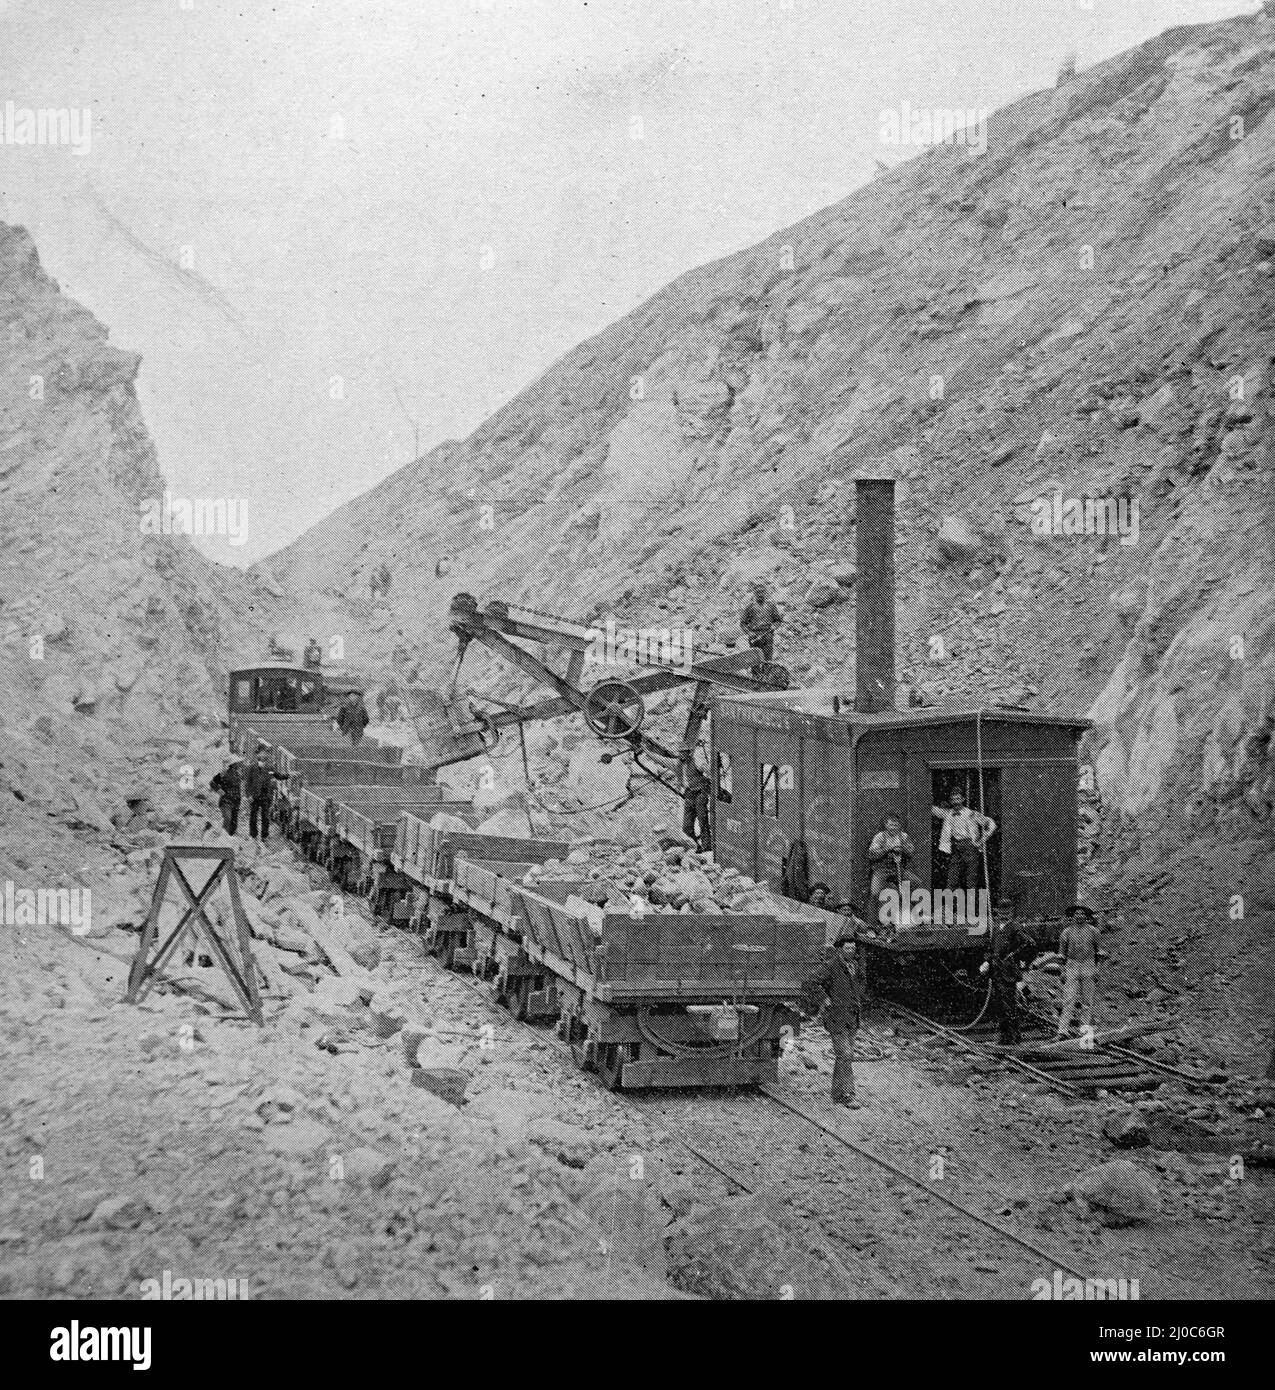 Eine Standard 40t Dampfschaufel, gebaut von Bucyrus Steam Shovel & Dredge Company. Schwarz-Weiß-Fotografie, aufgenommen um 1890s Stockfoto